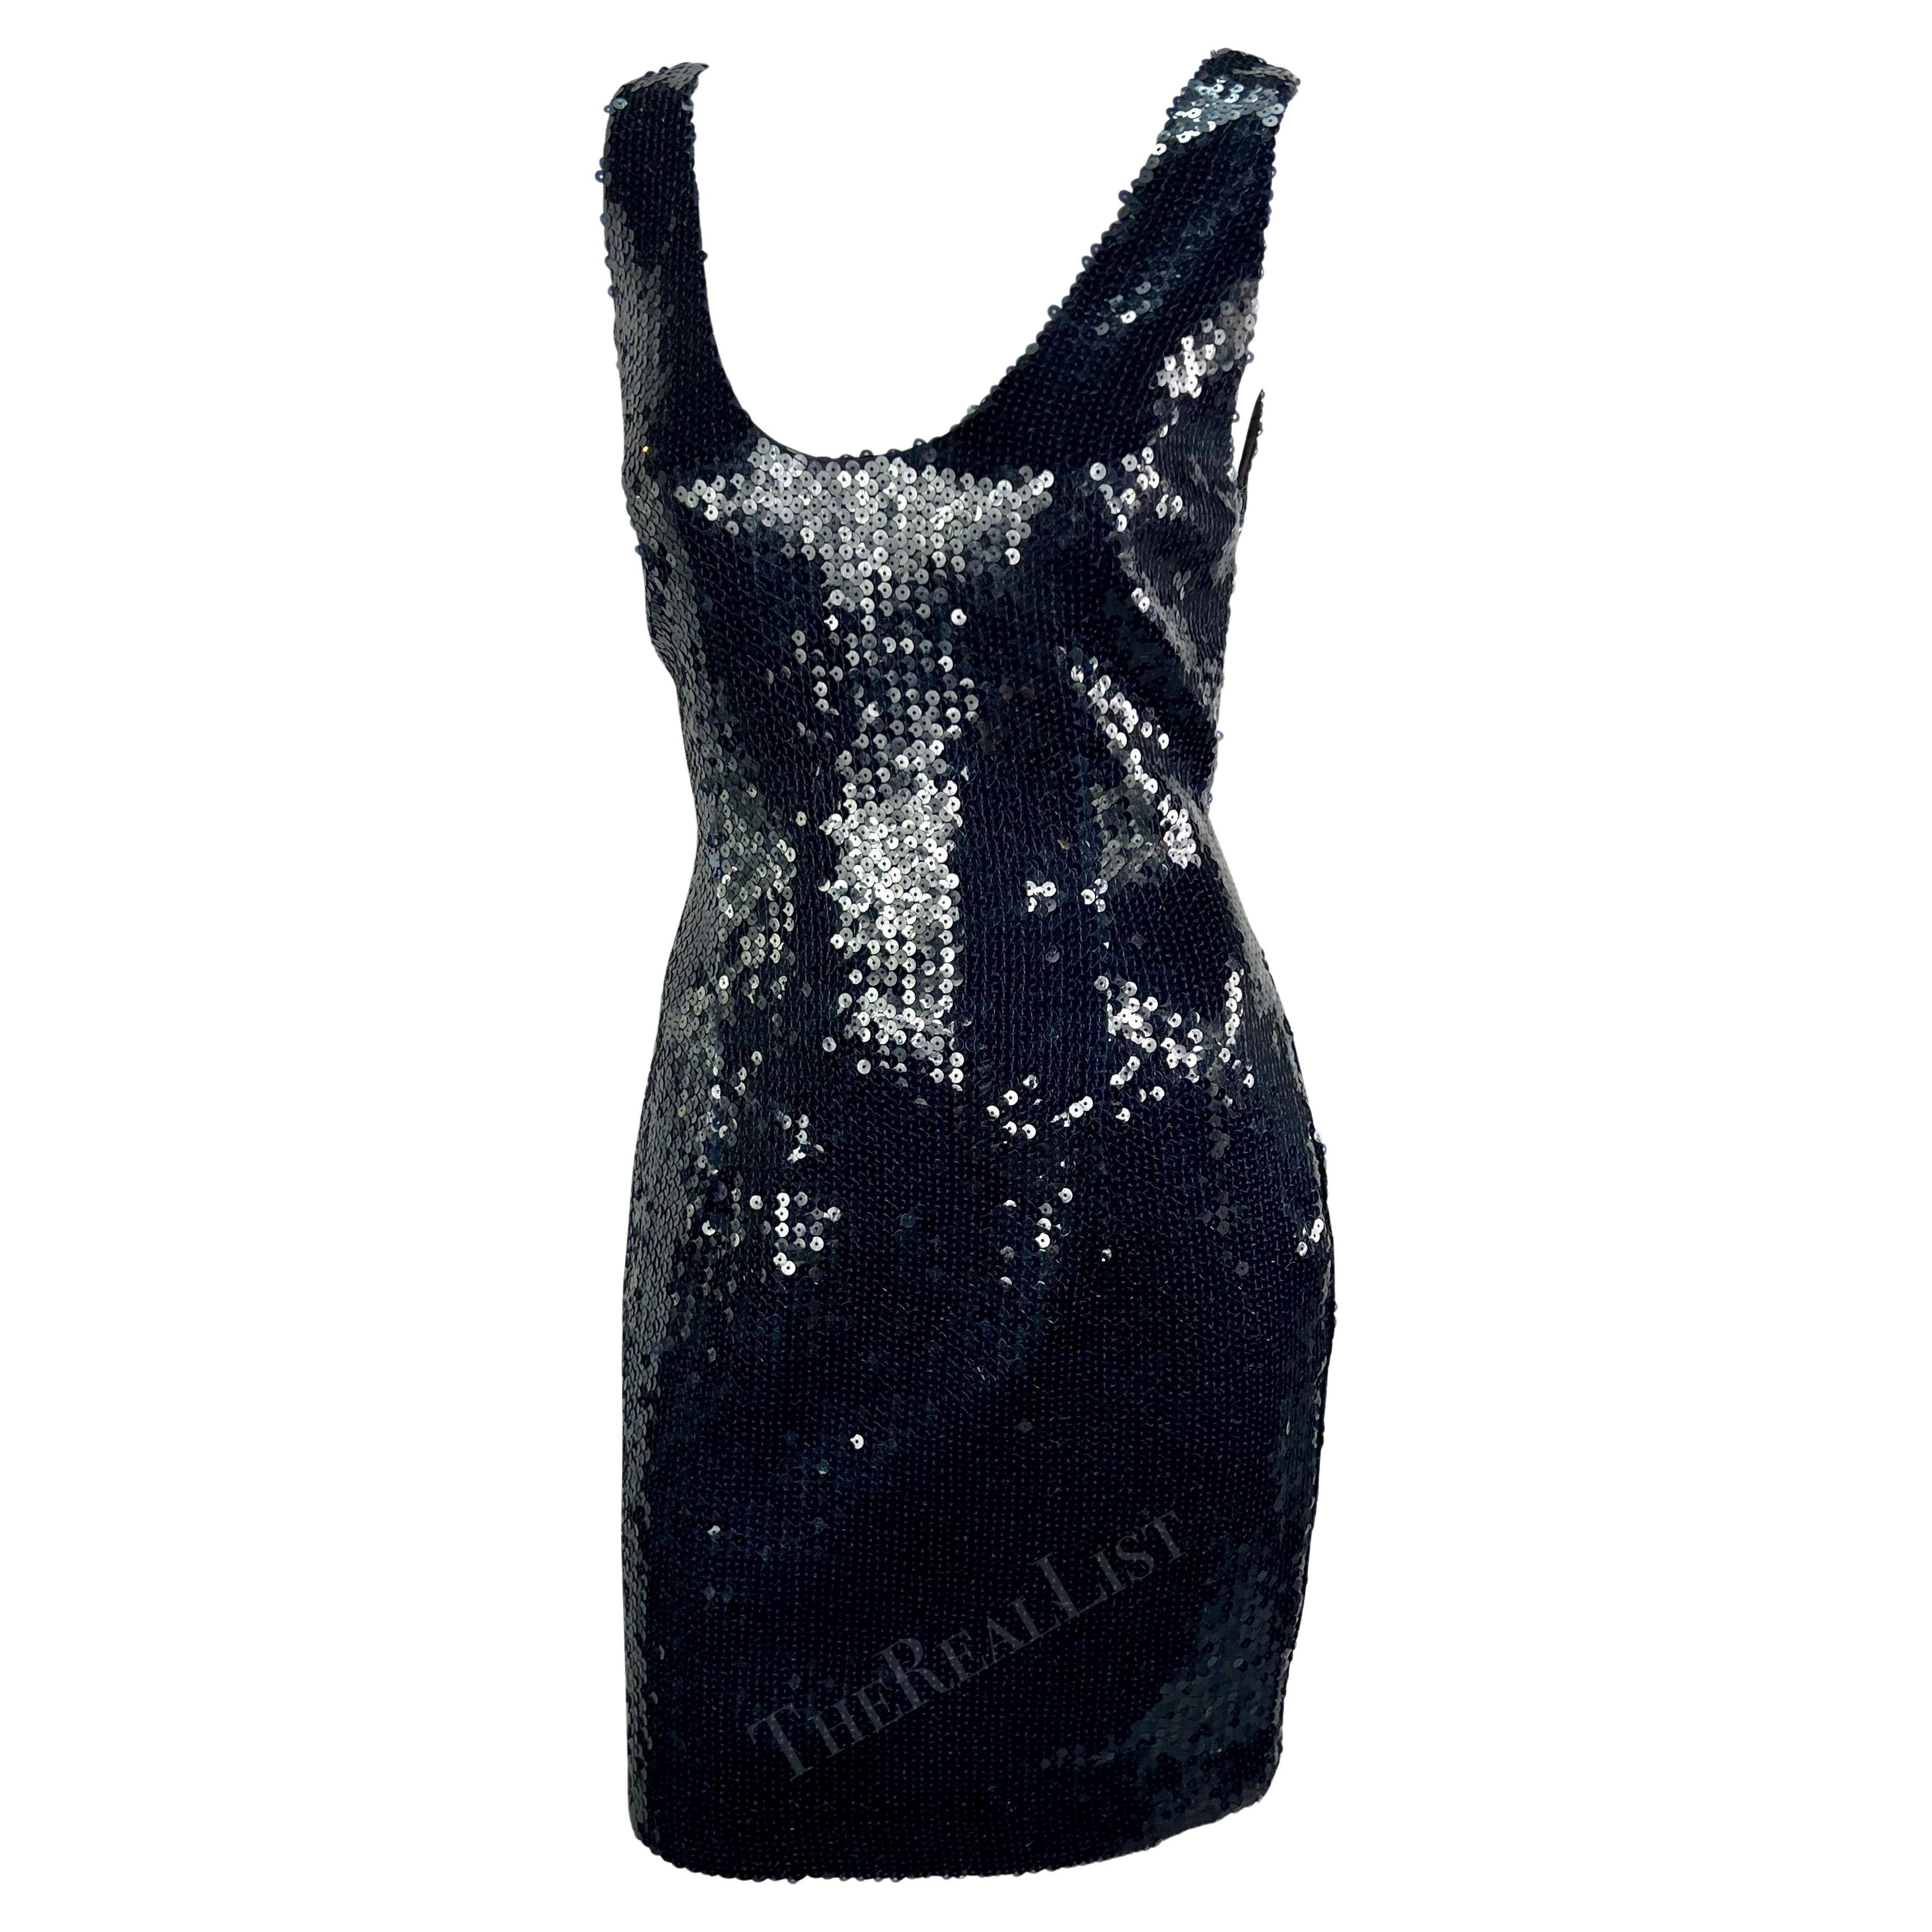 Wir präsentieren ein fabelhaftes tiefblaues Pailletten-Minikleid von Jil Sander aus den späten 1980er Jahren. Dieses atemberaubende Kleid ist durchgehend mit dunkelblauen Pailletten verziert. Das ärmellose Kleid hat breite Träger und einen tiefen